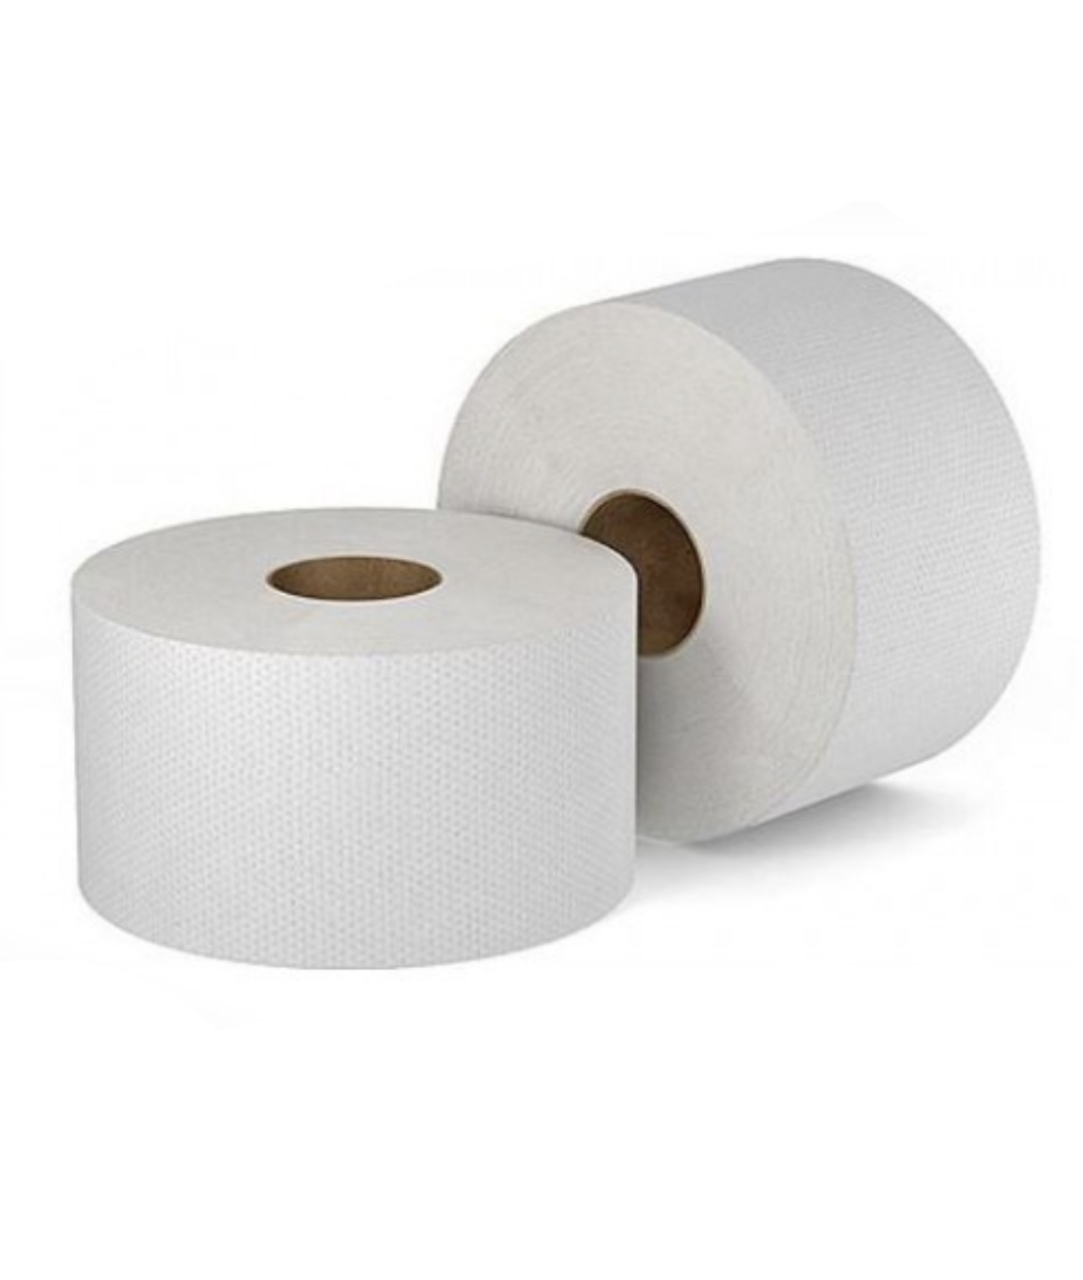 Туалетная бумага Профгигиена Comfort, двухслойная белая .арт. 204 бумага туалетная 2 слойная officeclean белая 37 5м 4 рул уп 10 уп